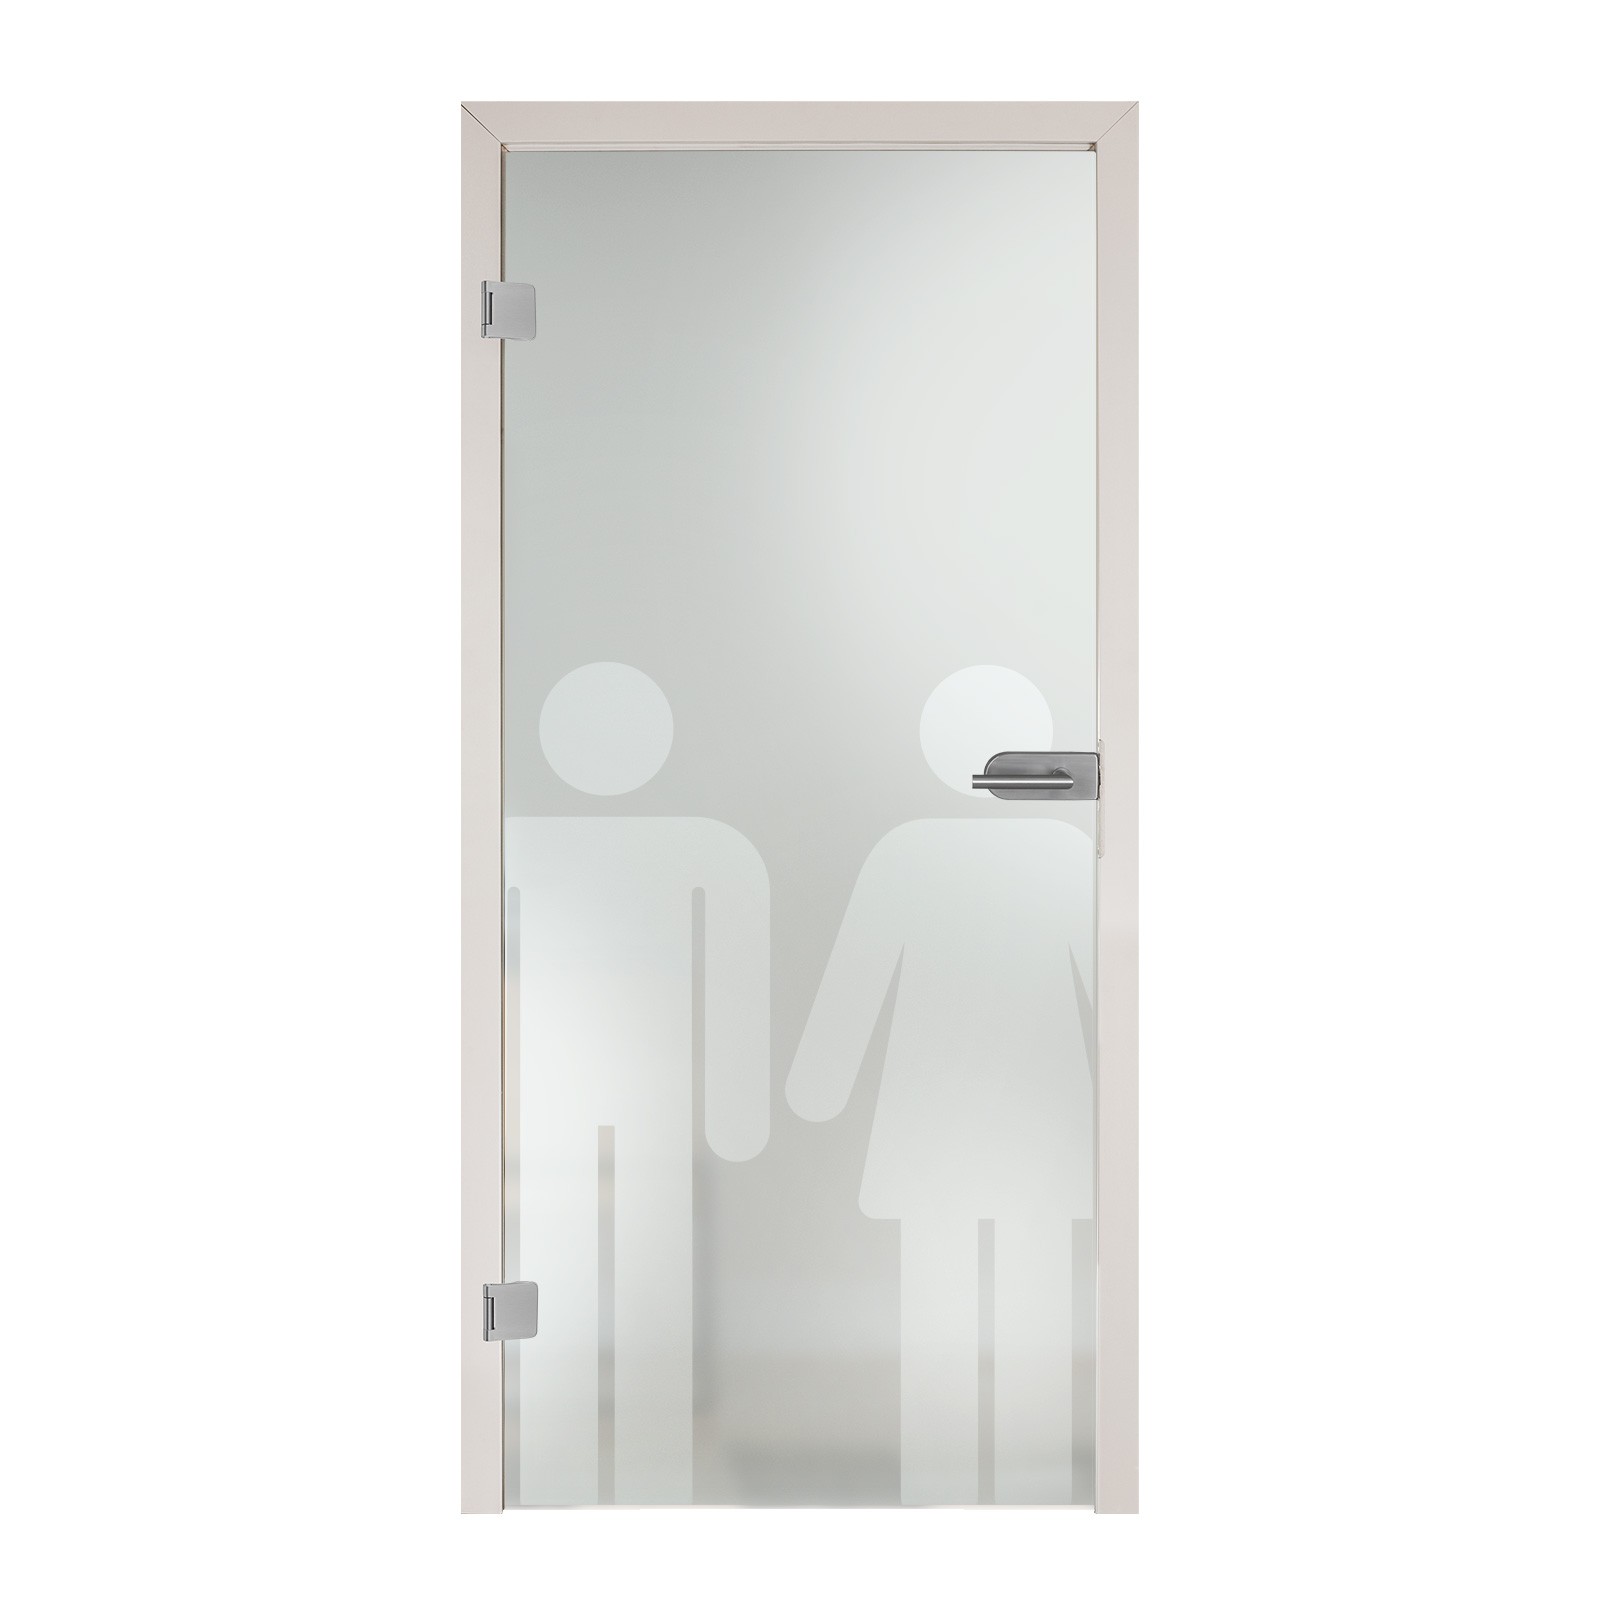 Tragbare Toilette 37 x 46 x 36 cm – Selbstschutz-Deutschland